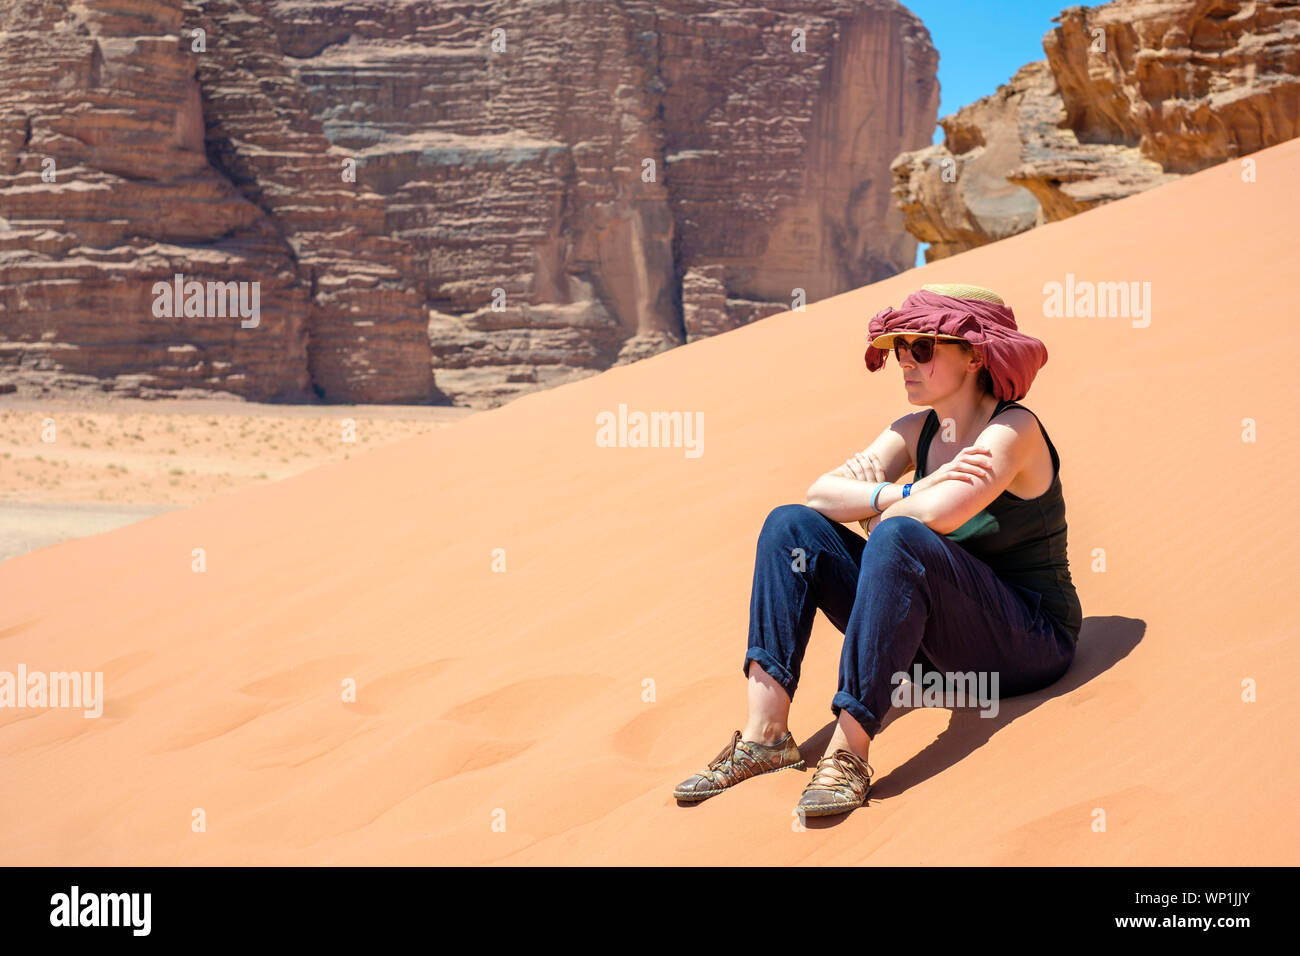 La Jordanie, Aqaba Gouvernorat, Wadi Rum. Zone protégée de Wadi Rum, UNESCO World Heritage Site. Un touriste est assis sur une dune de sable dans le soleil chaud. (MR) Banque D'Images